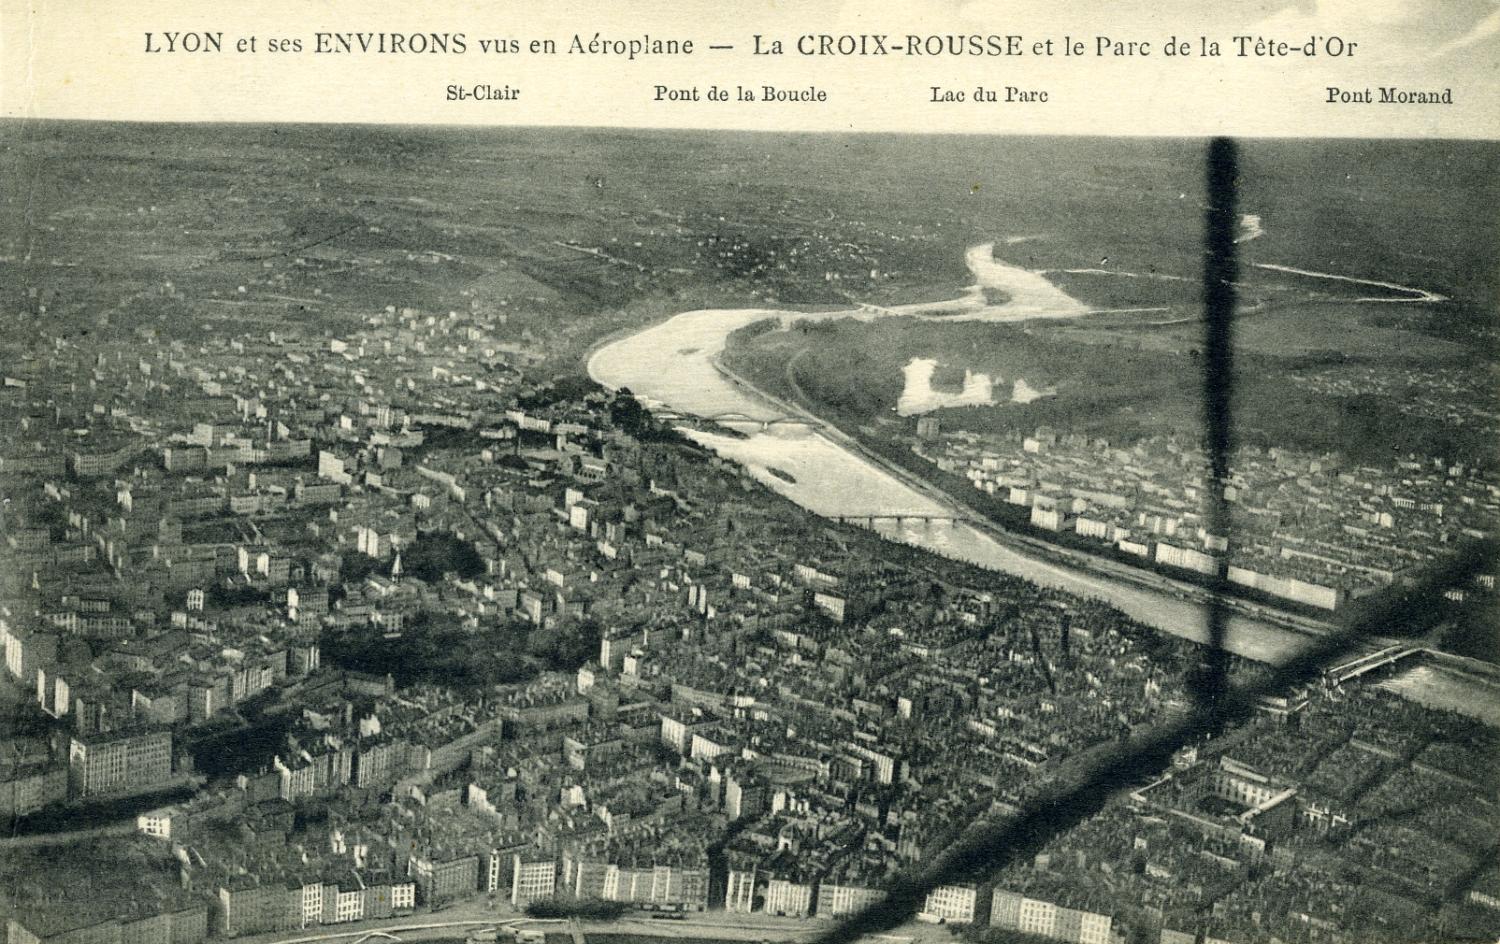 Lyon et ses environs vus en aéroplane